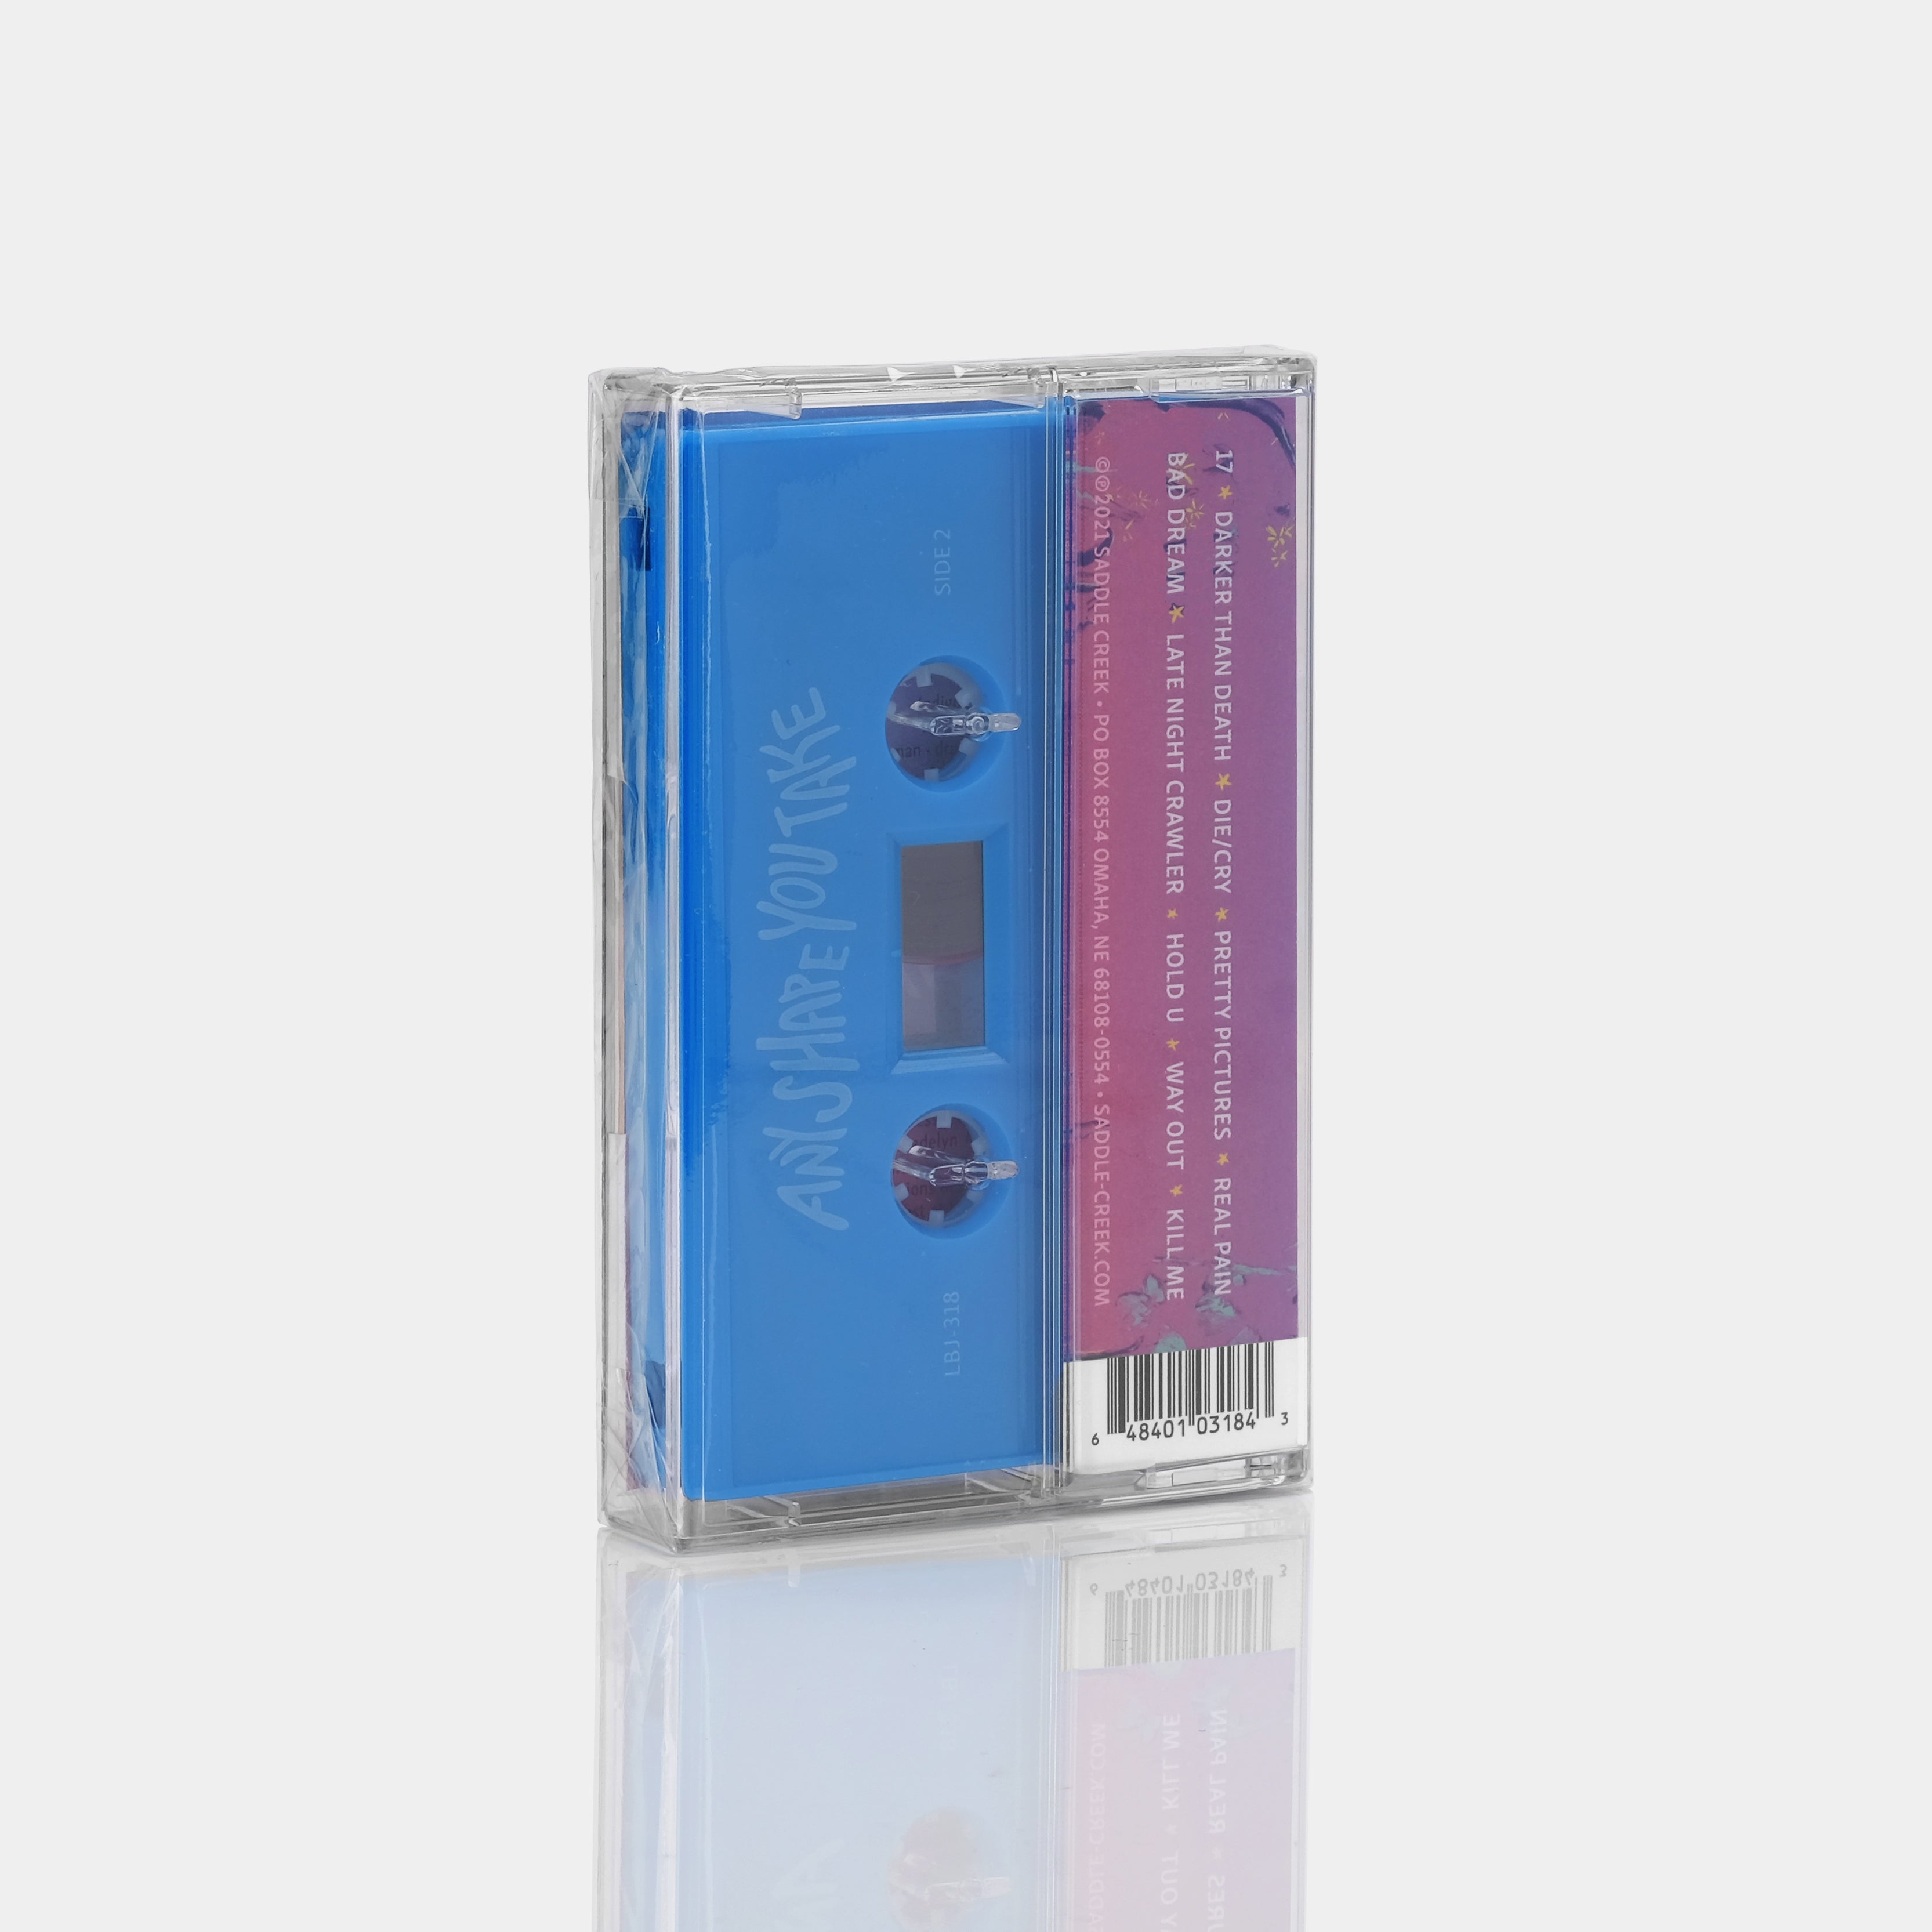 Indigo De Souza - Any Shape You Take Cassette Tape